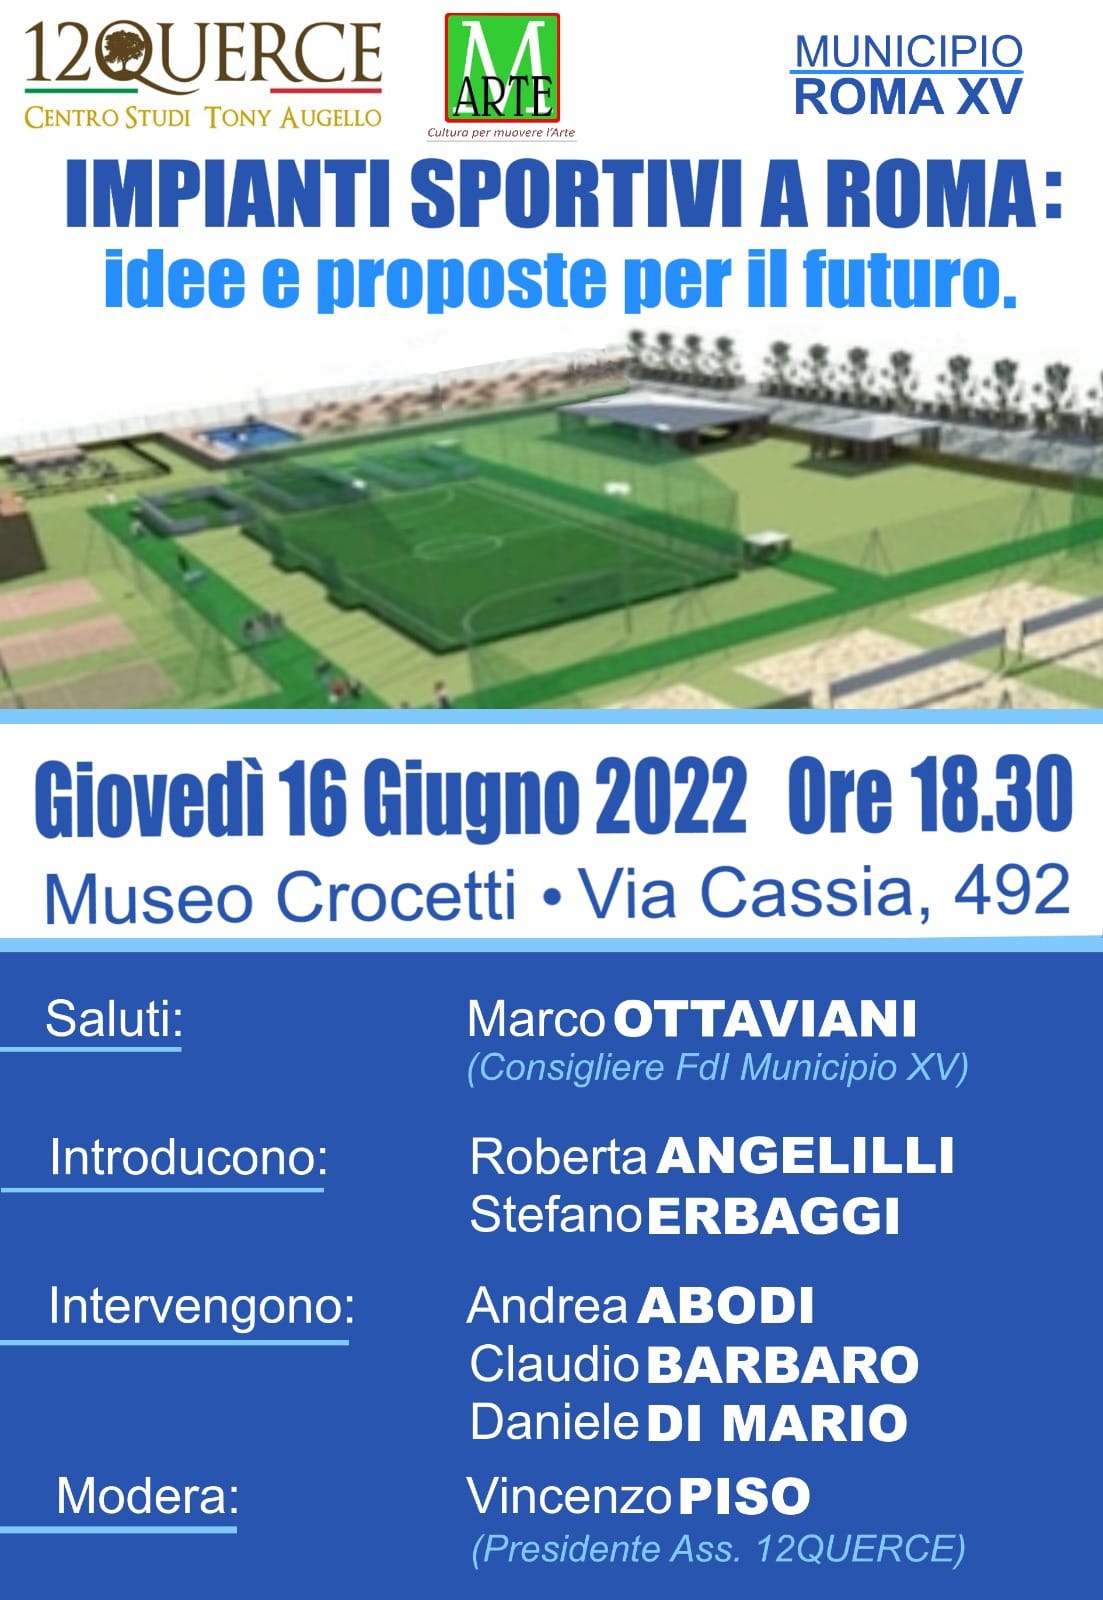 EVENTO. “Impianti sportivi a Roma: idee e proposte per il futuro”